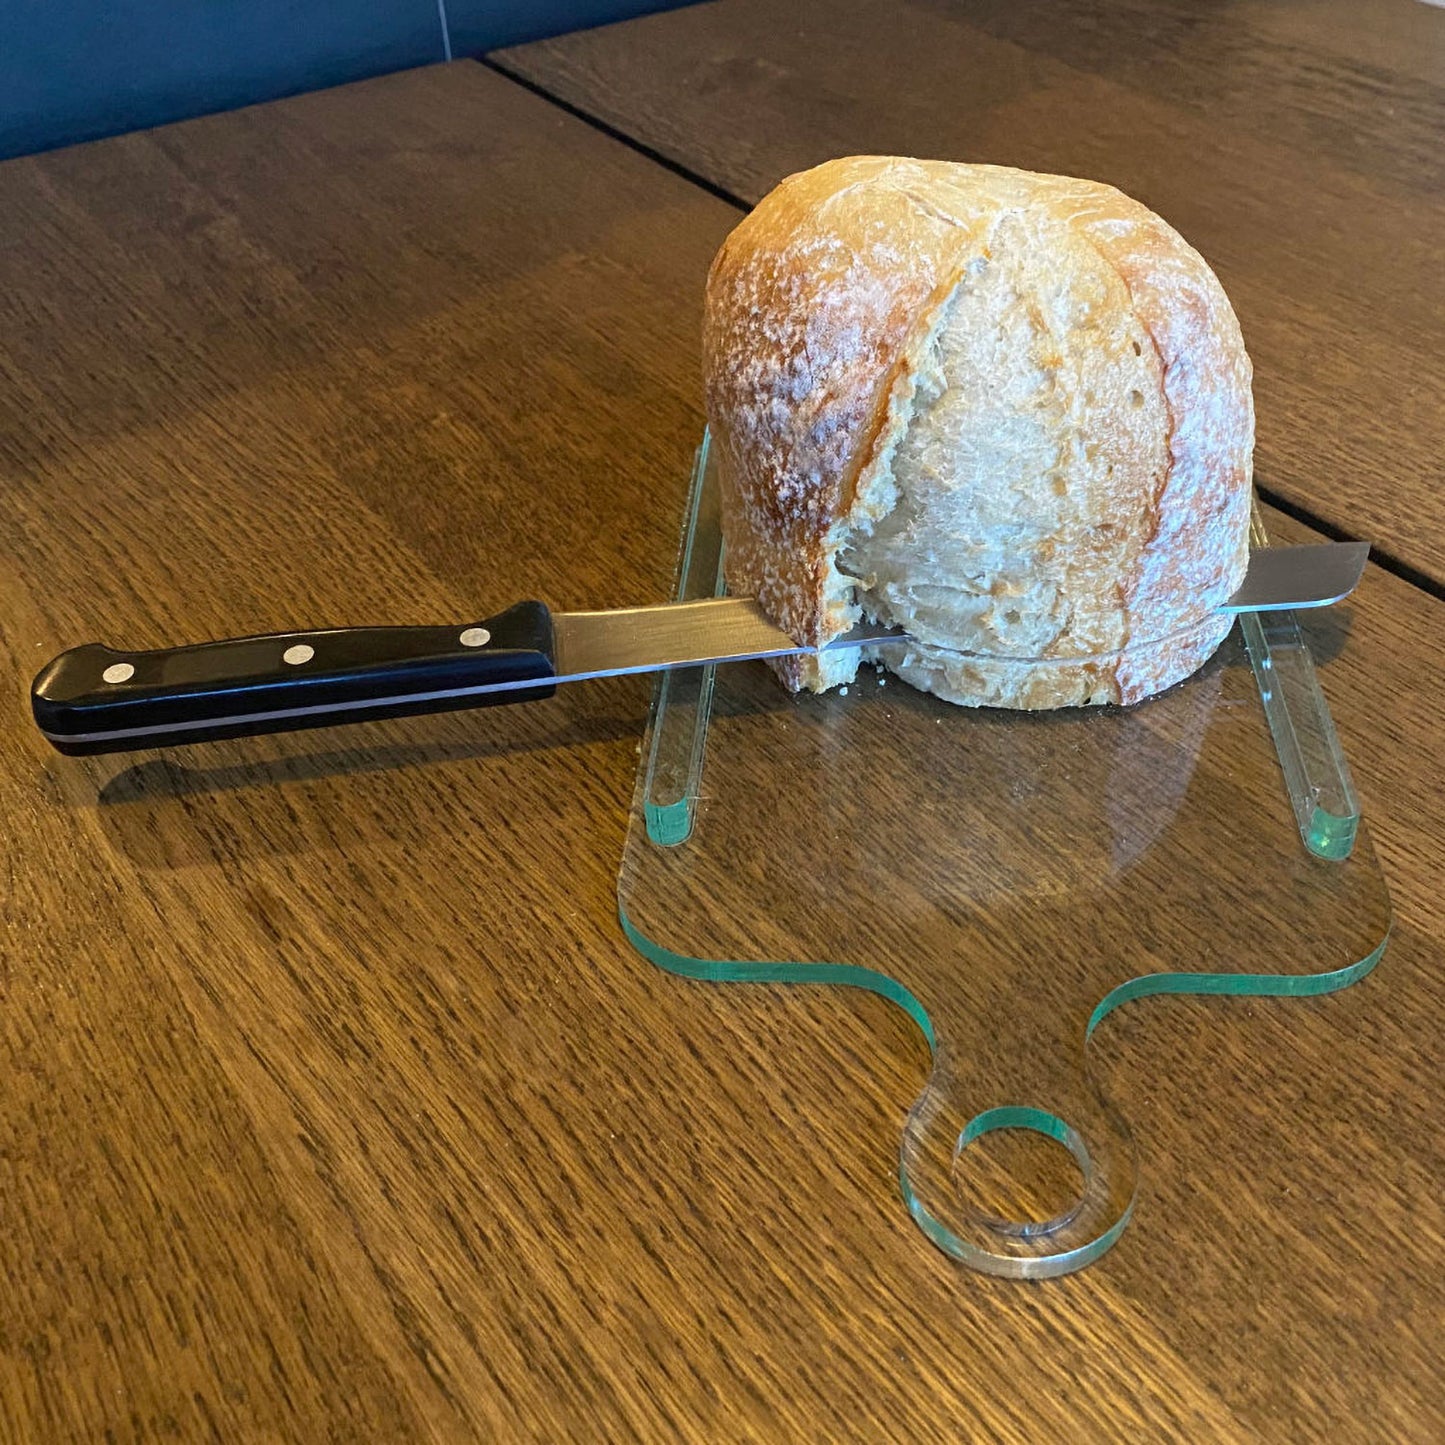 DIY bread slicer 